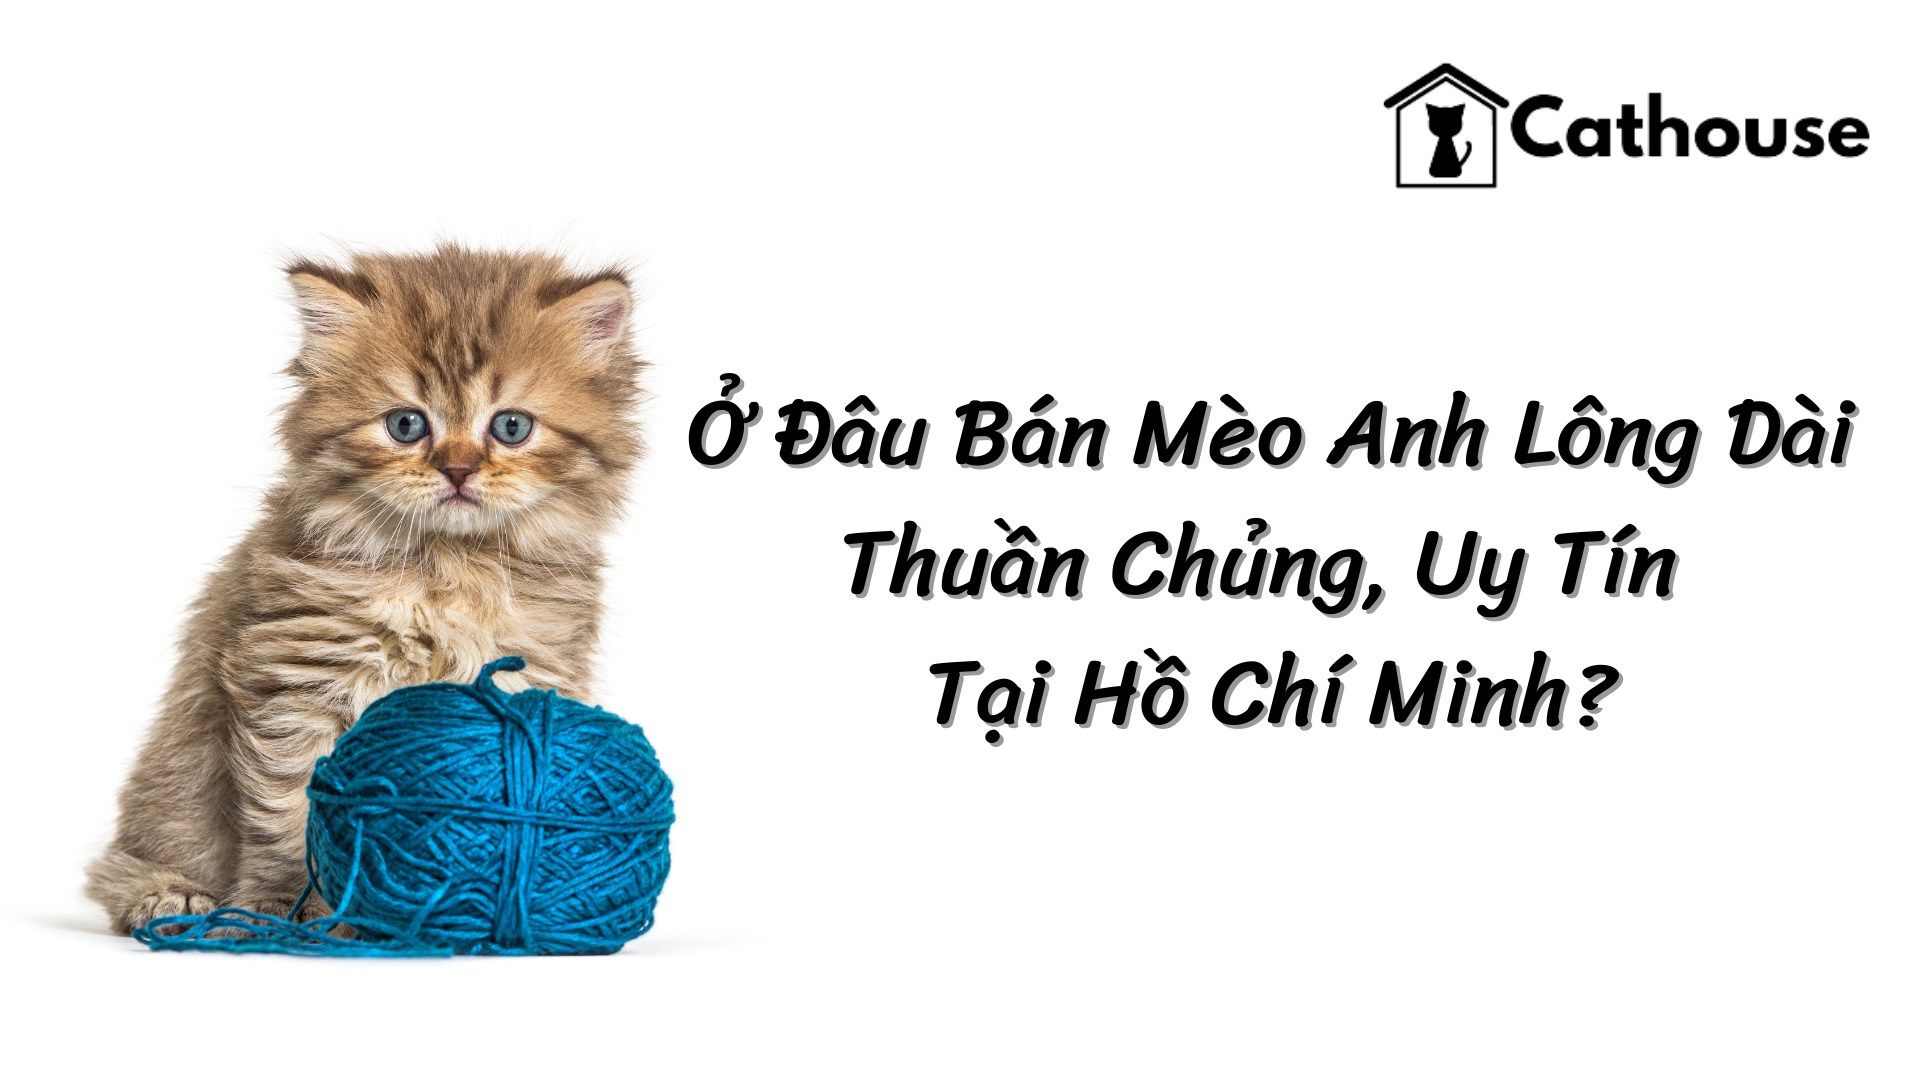 Ở Đâu Bán Mèo Anh Lông Dài Thuần Chủng, Uy Tín Tại Hồ Chí Minh?